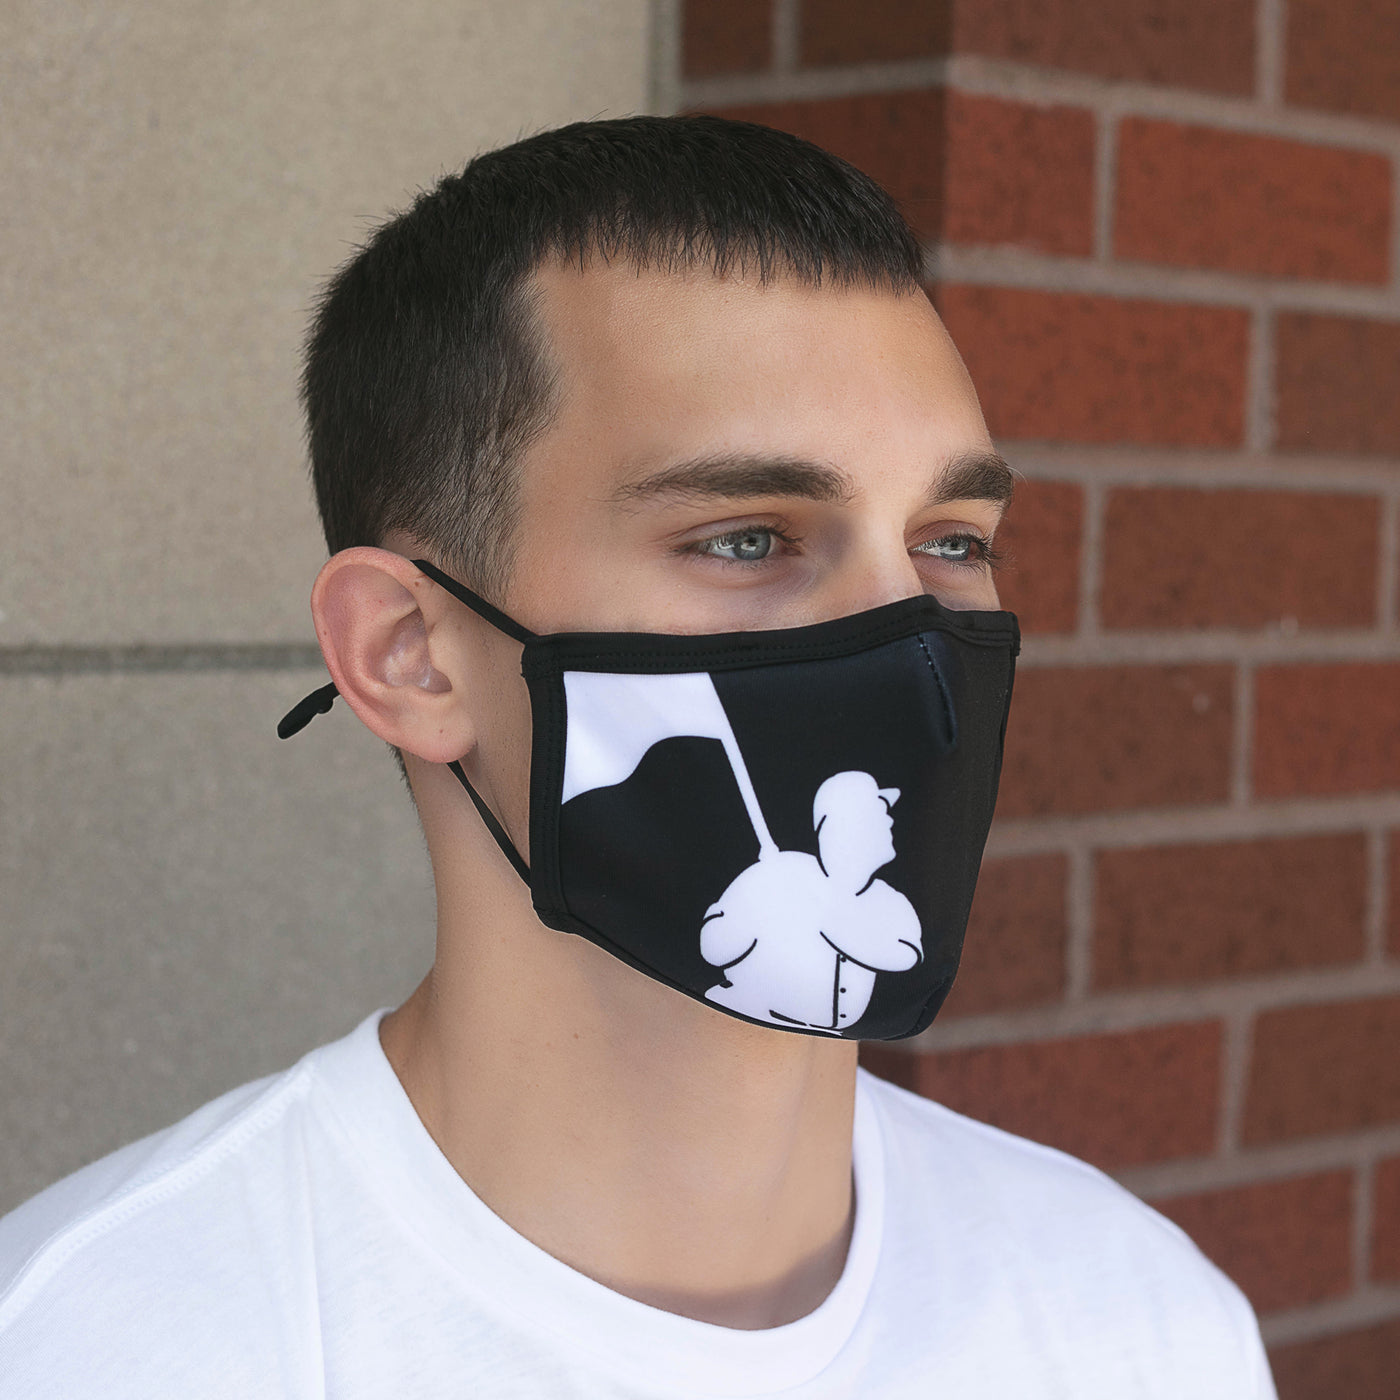 Flag Man (Black) Fashion Mask - Unisex